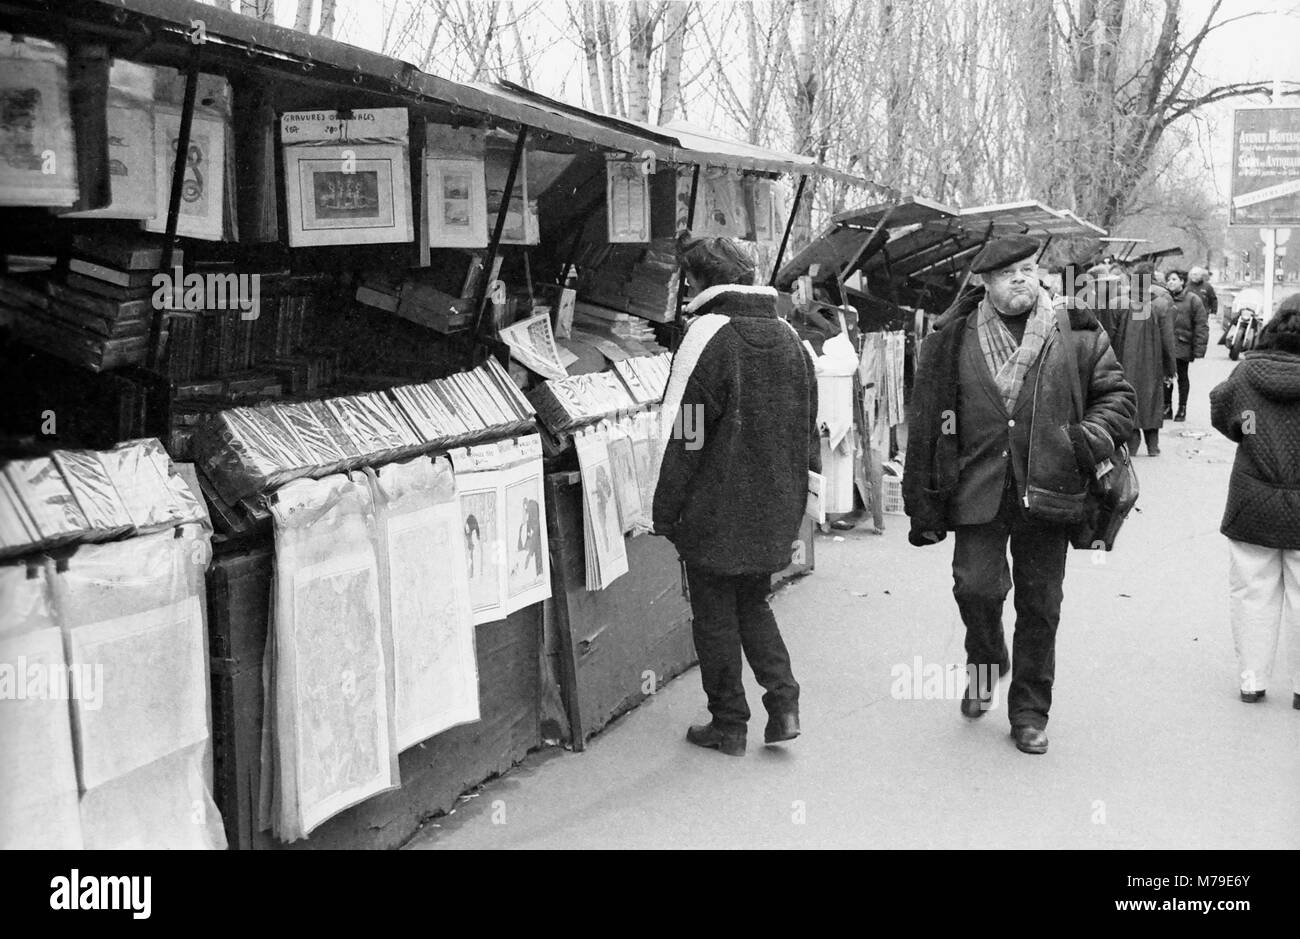 Left bank bouquinistes, Quai des Grands Augustins, Paris, France, circa 1985.  Black and white film photograph Stock Photo